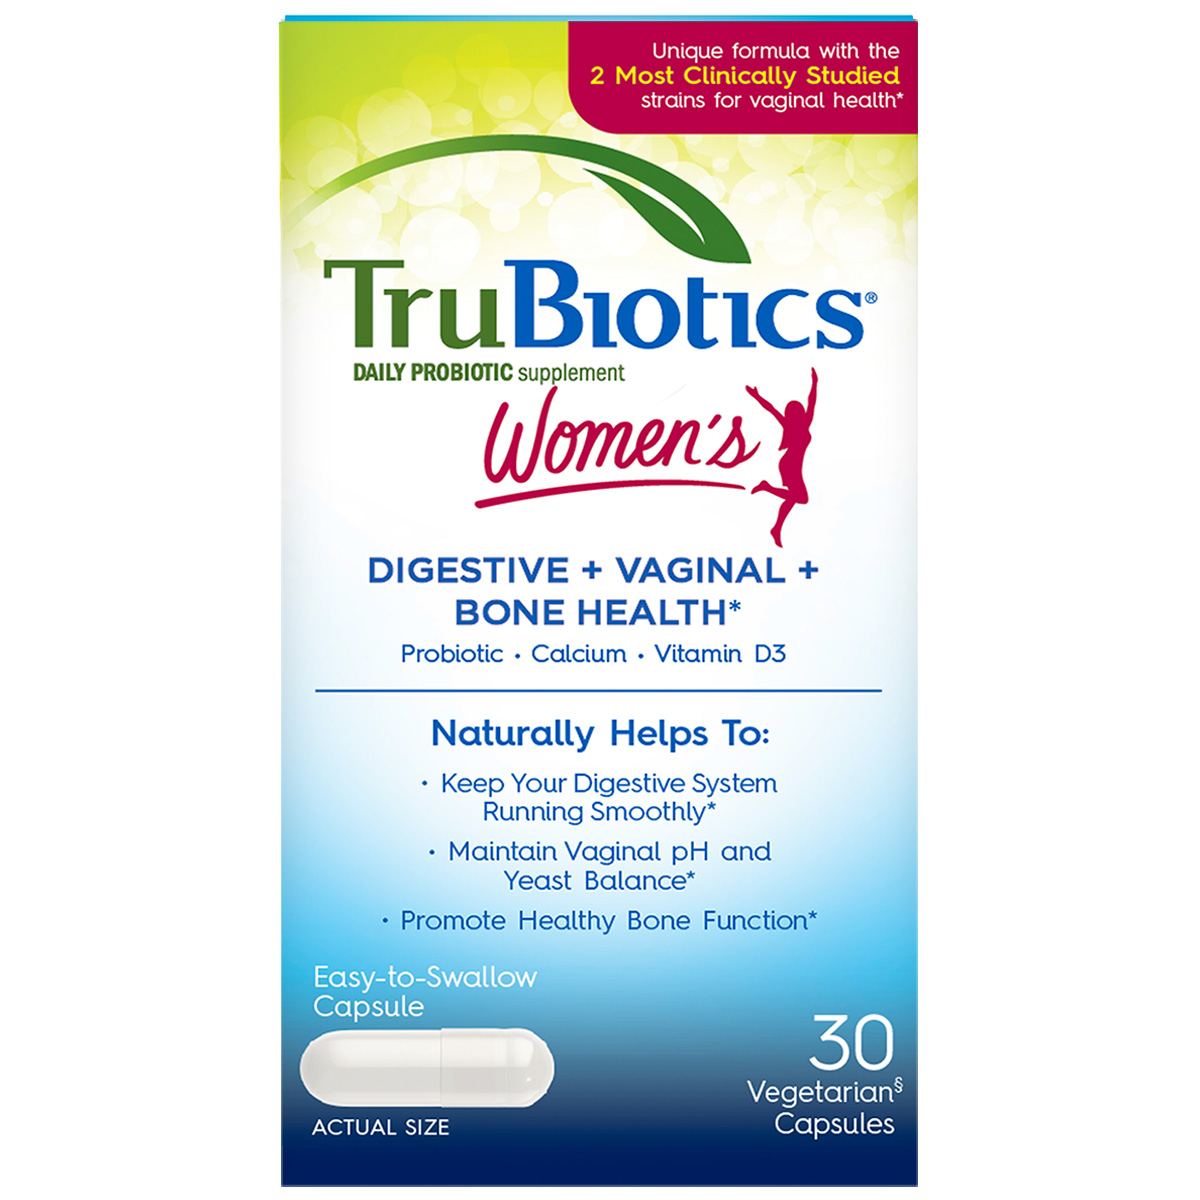 Women's Probiotic Capsules